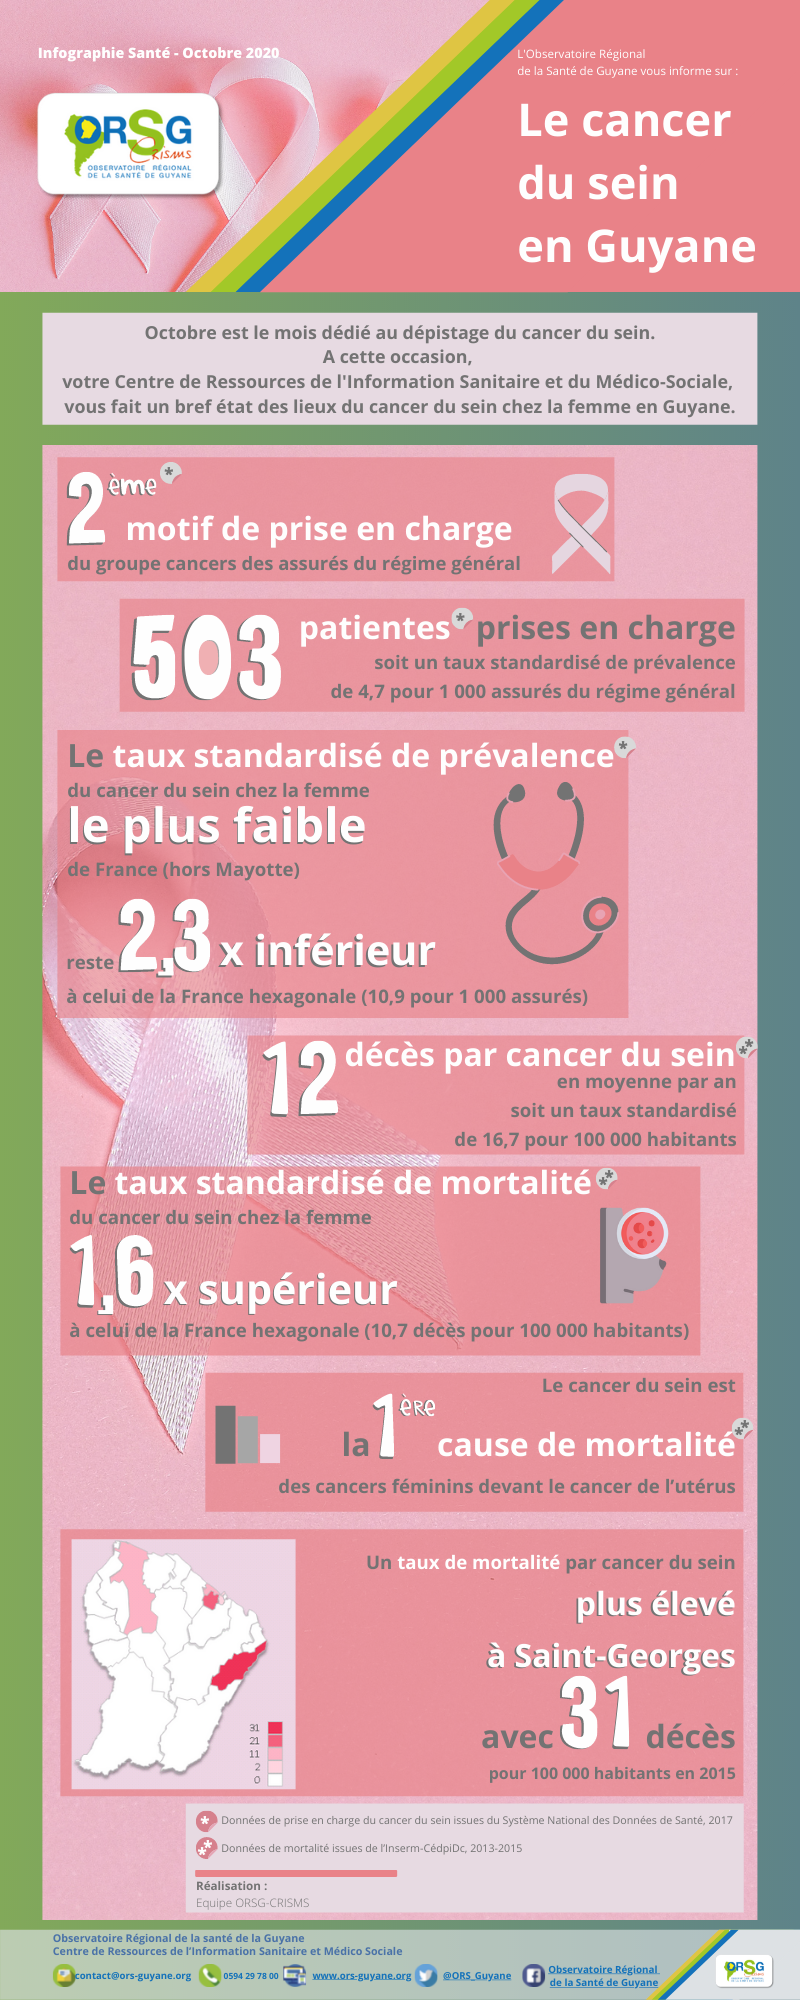 Infographie sur le cancer du sein en Guyane